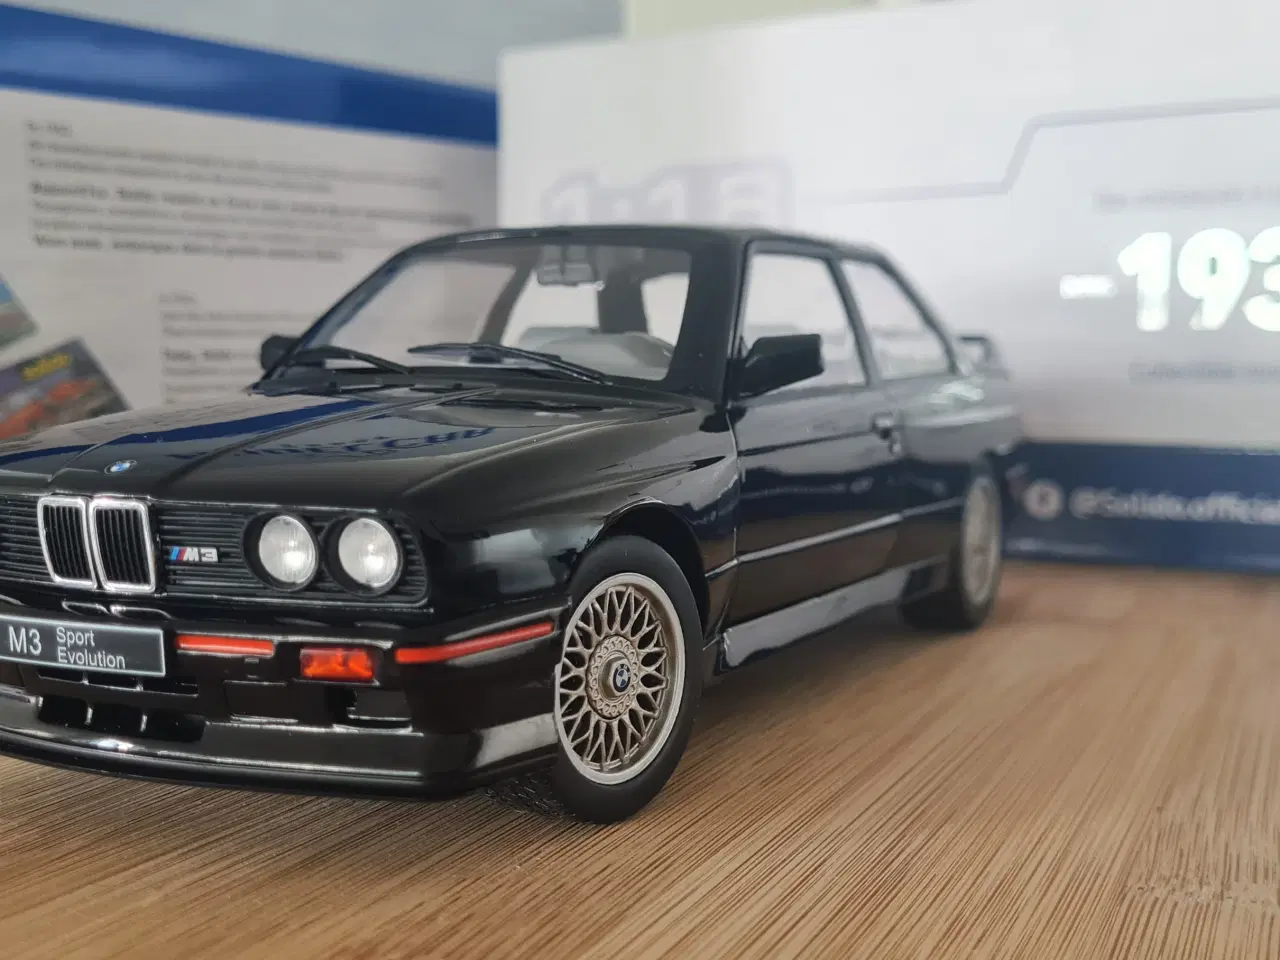 Billede 6 - BMW M3 E30 Sport Evolution 1990 1/18 skala 